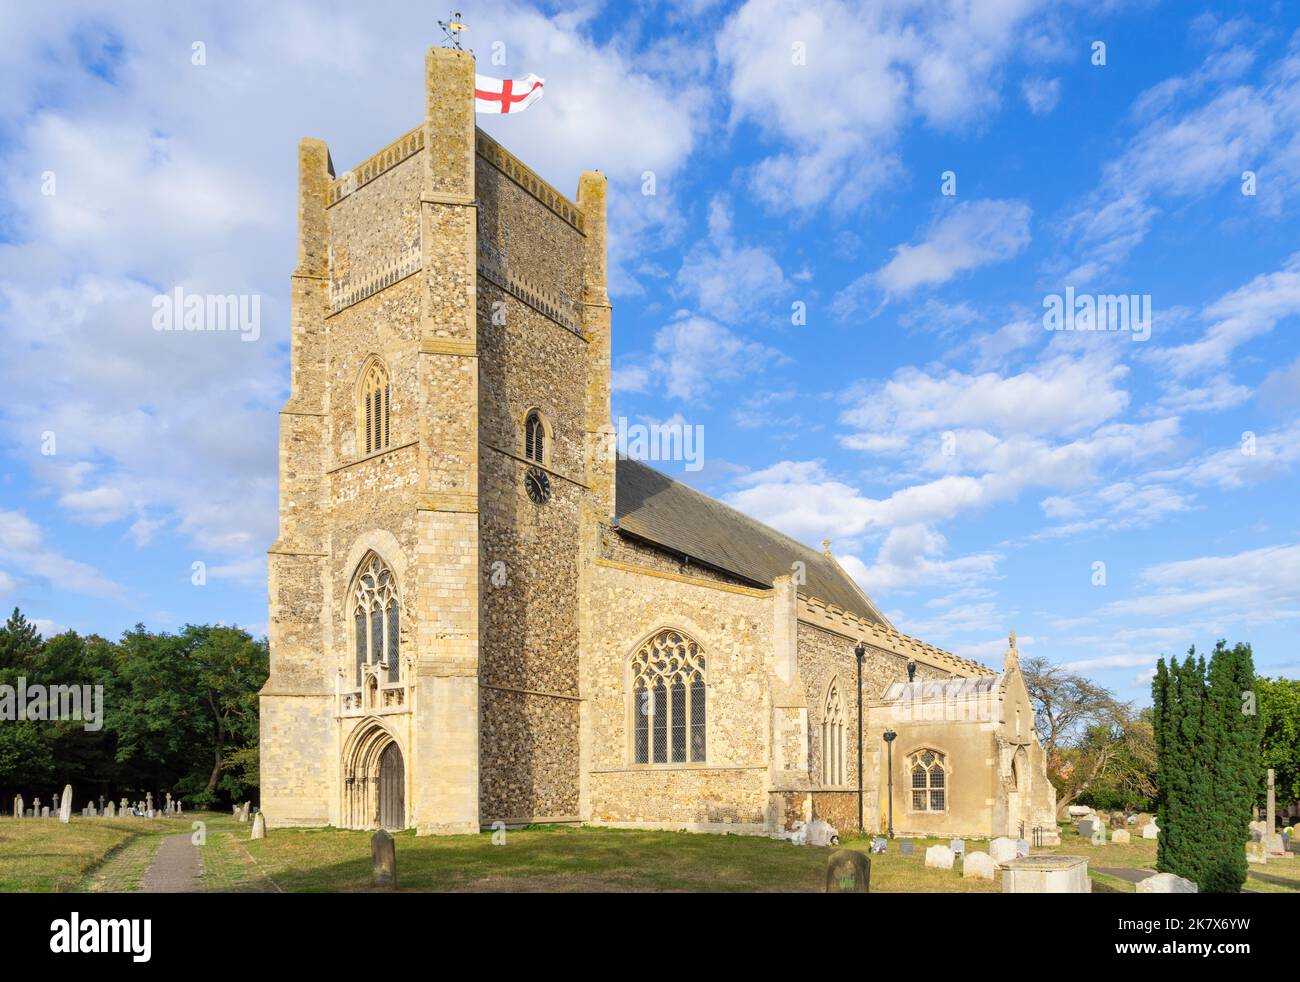 Église Saint-Bartholomée une église médiévale dans le village d'Orford Suffolk Angleterre Royaume-Uni Europe Banque D'Images